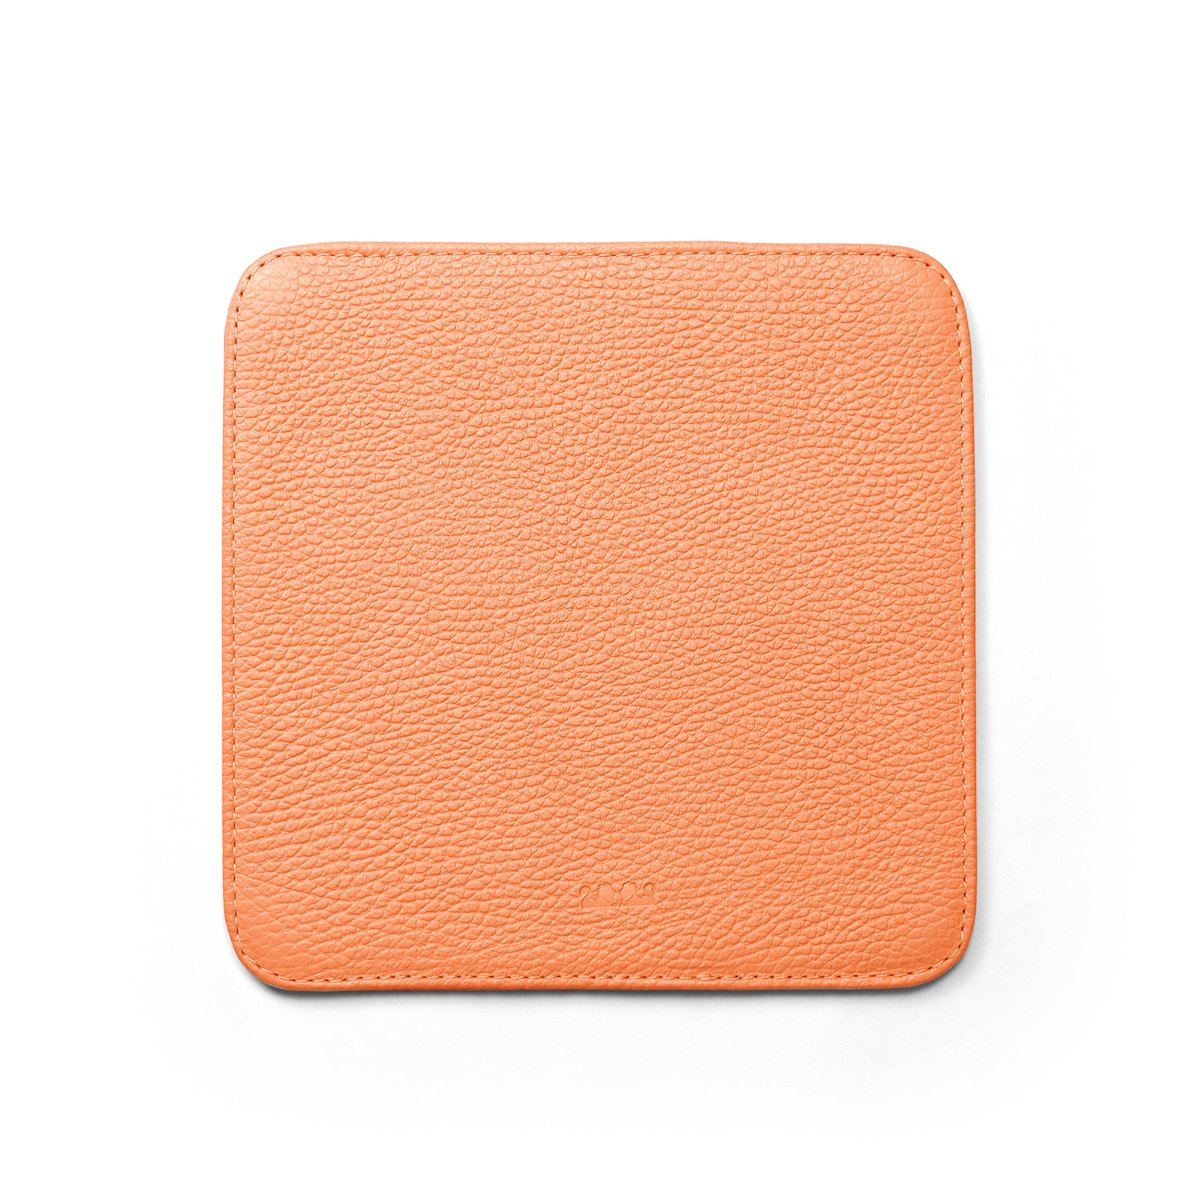 mousepad-square-floater-laranja-1